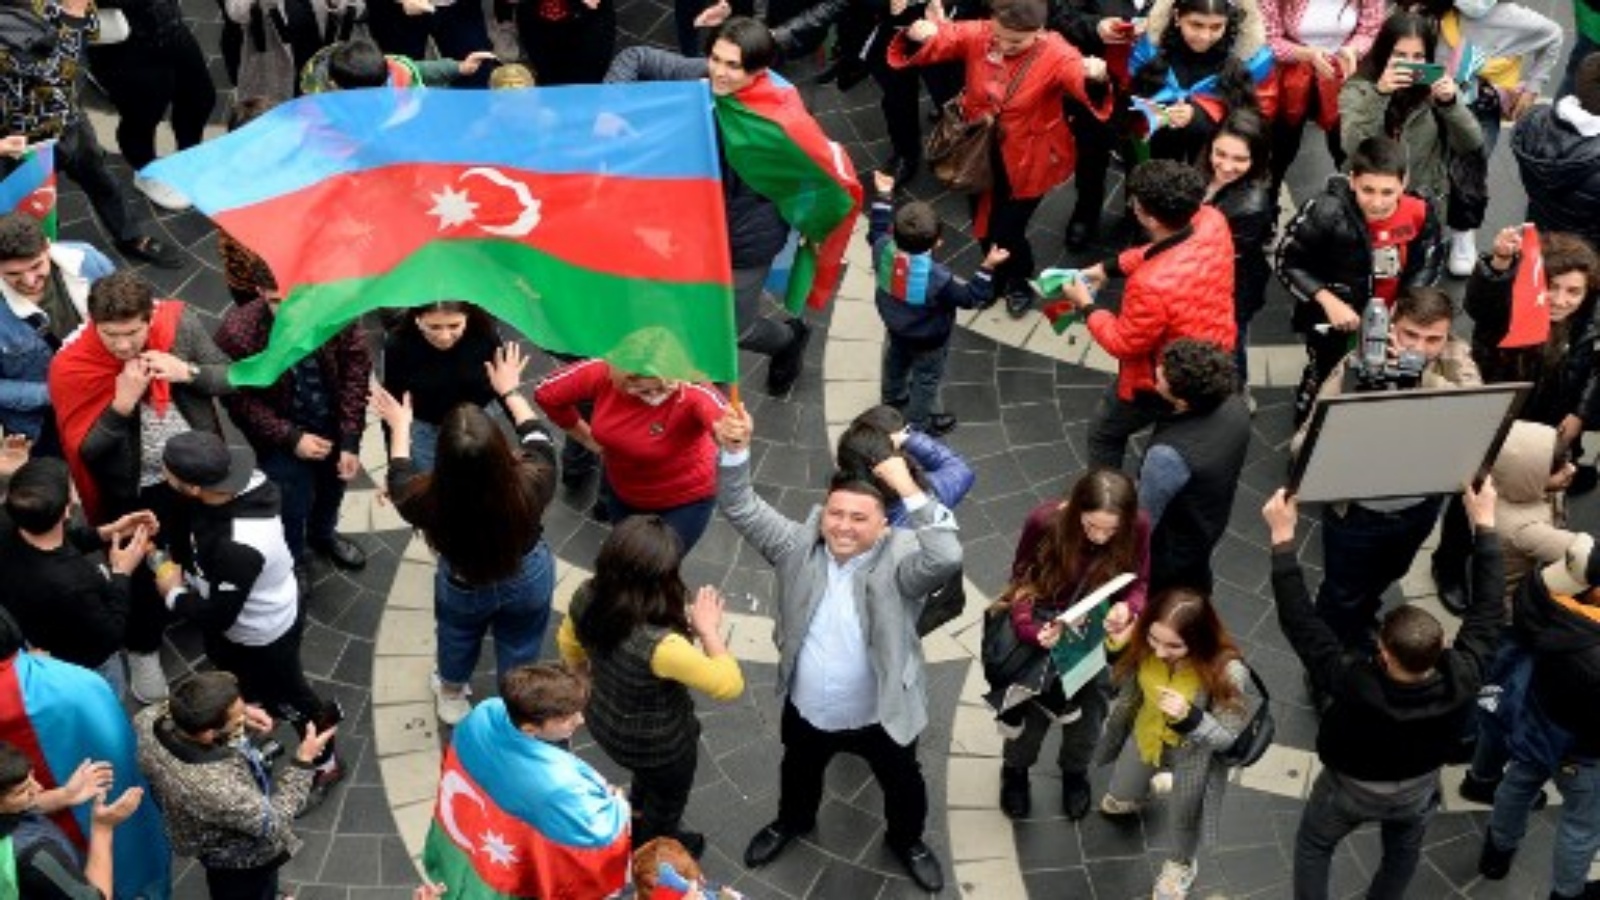 الأذربيجانيون يلوحون بالعلم الوطني أثناء احتفالهم في شوارع العاصمة باكو في 10 نوفمبر 2020 ، بعد أن وافقت أرمينيا وأذربيجان على وقف إطلاق النار بعد سلسلة من الانتصارات الأذرية في القتال على منطقة ناغورنو كاراباخ المتنازع عليها